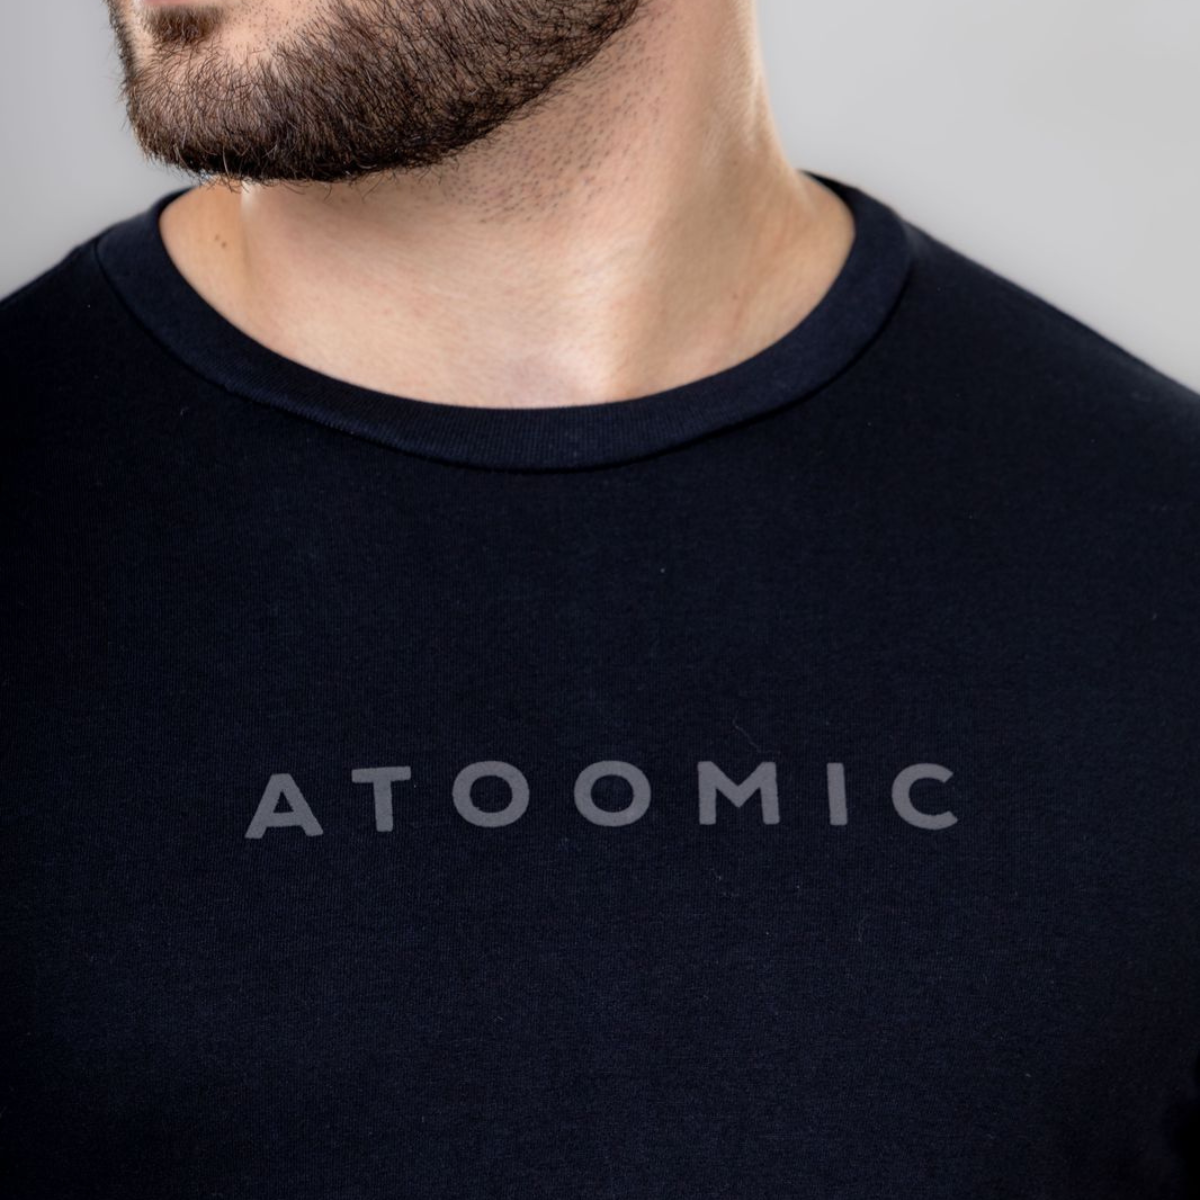 Camiseta Básica de algodão Preto Estampa Atoomic